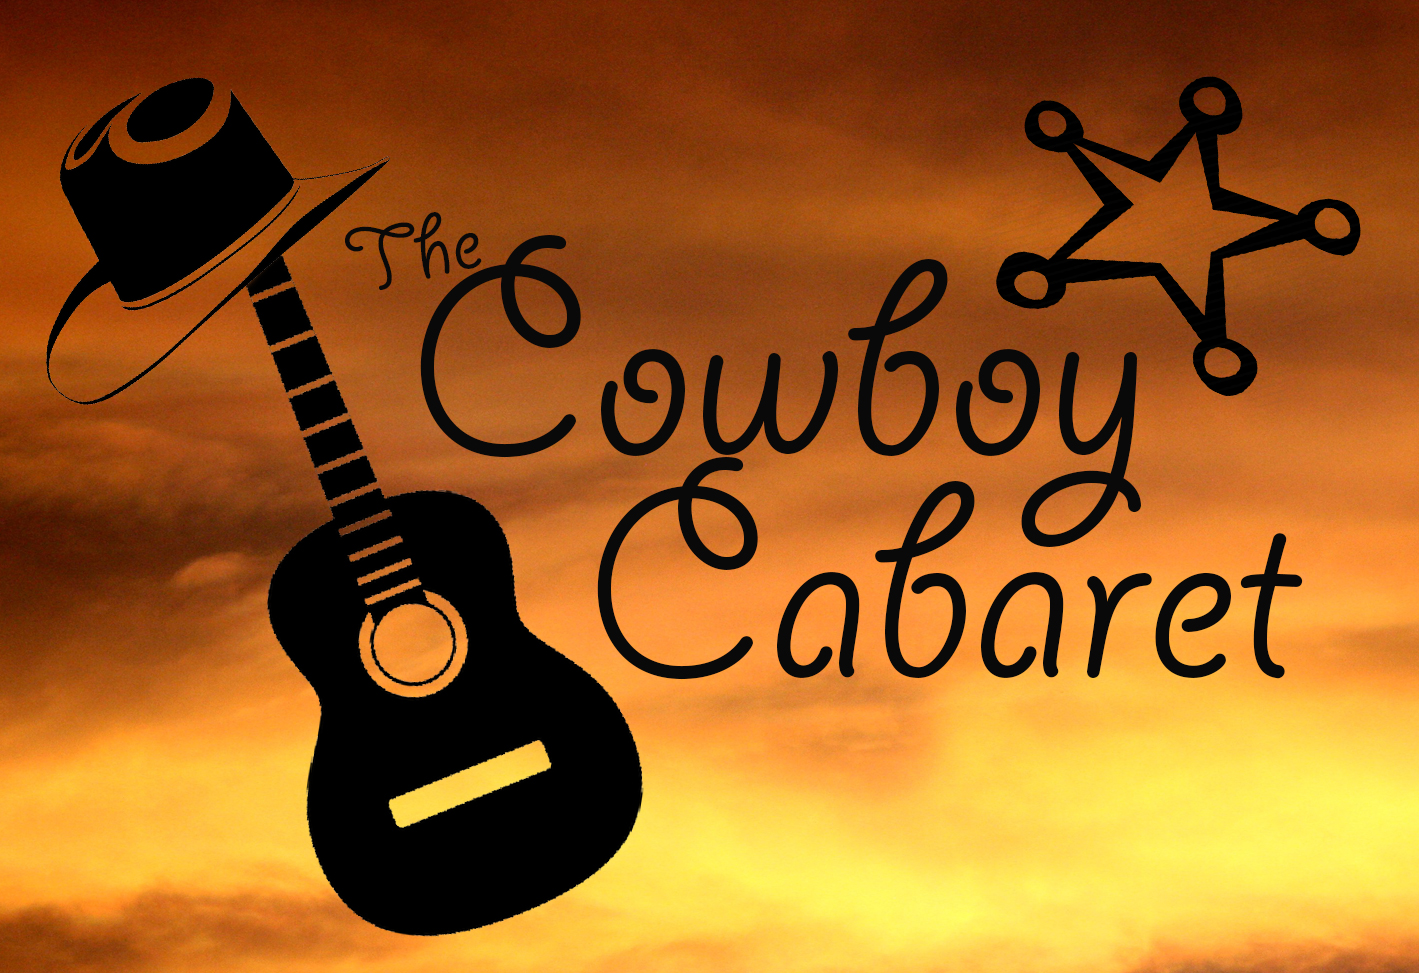 A Return to The Cowboy Cabaret